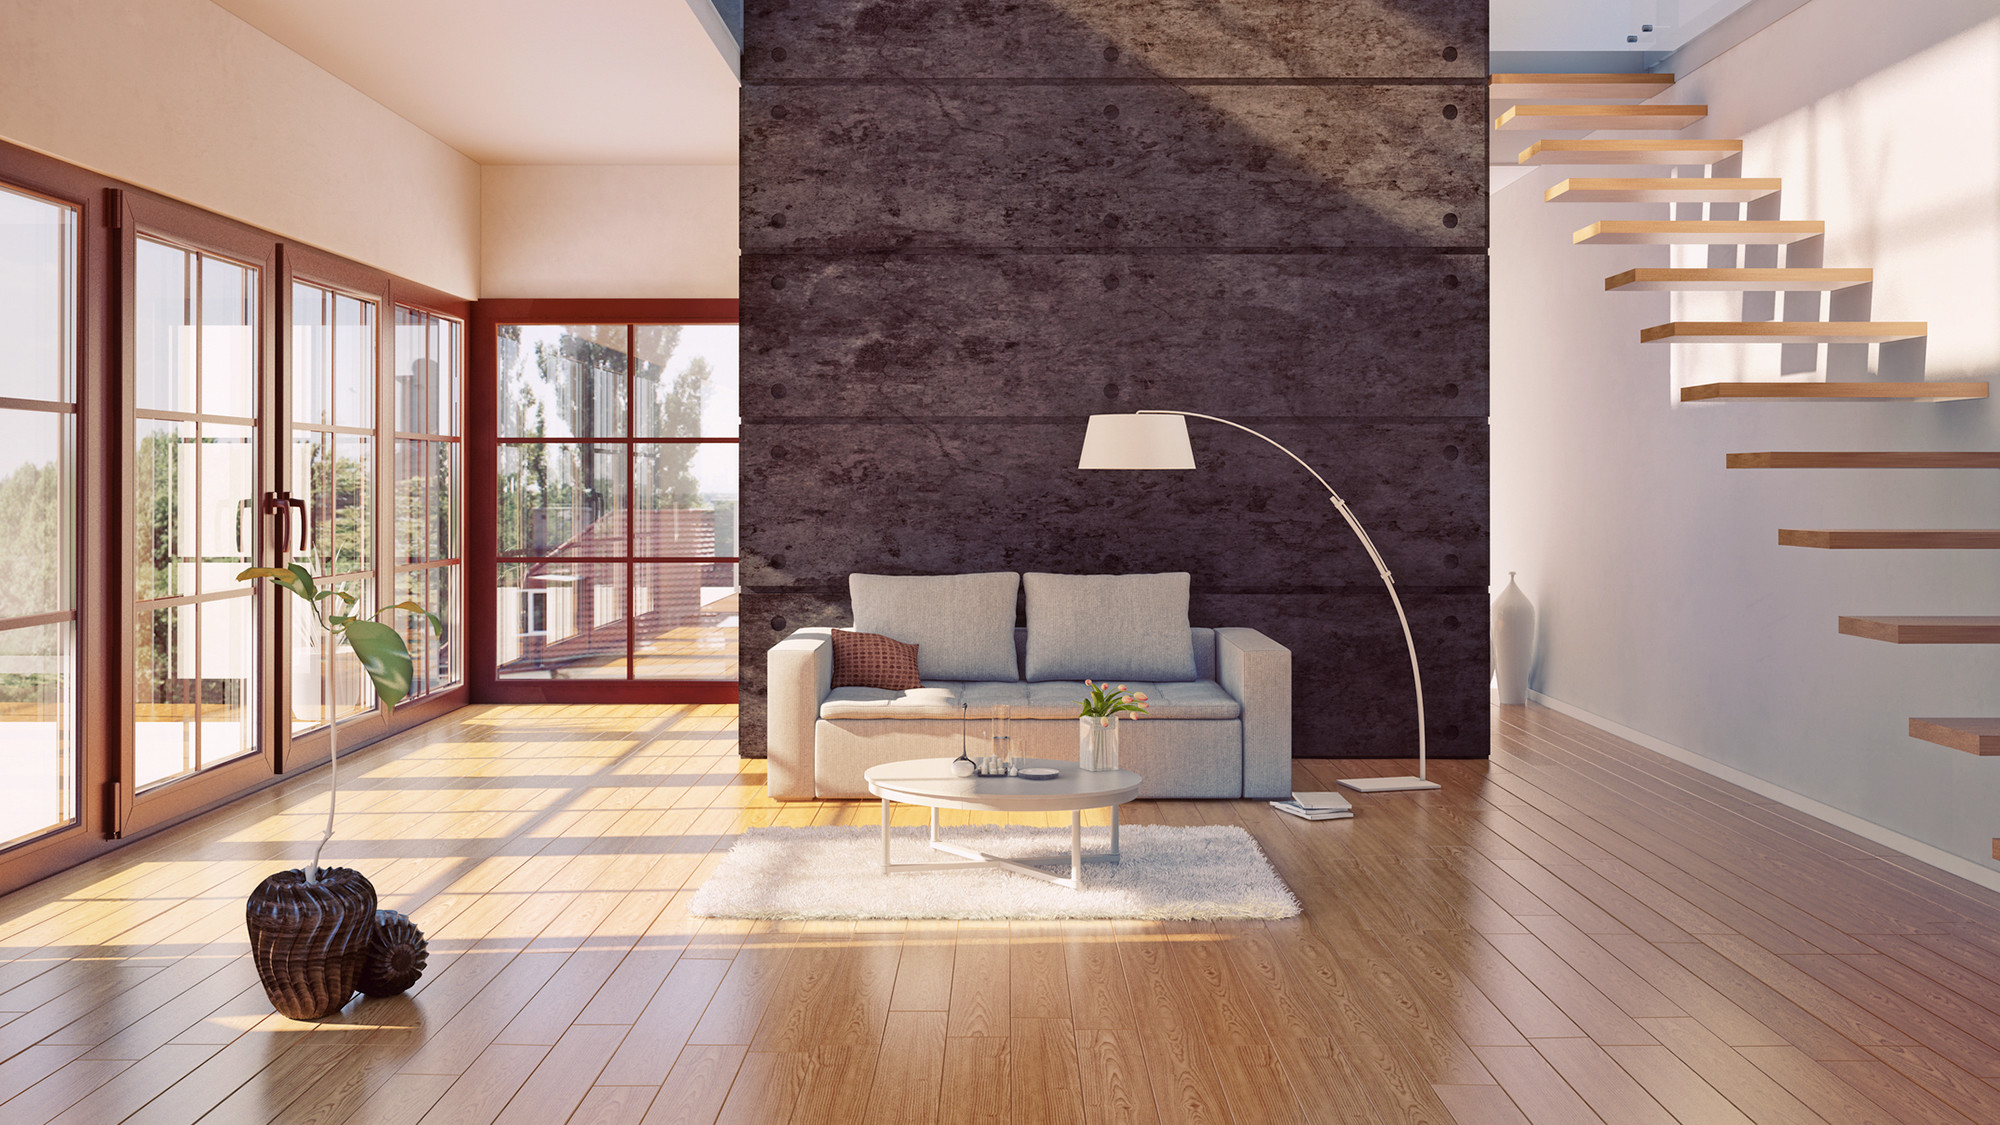 Maple Hardwood Flooring Durability Of Do Hardwood Floors Provide the Best Return On Investment Realtor Coma Pertaining to Hardwood Floors Investment